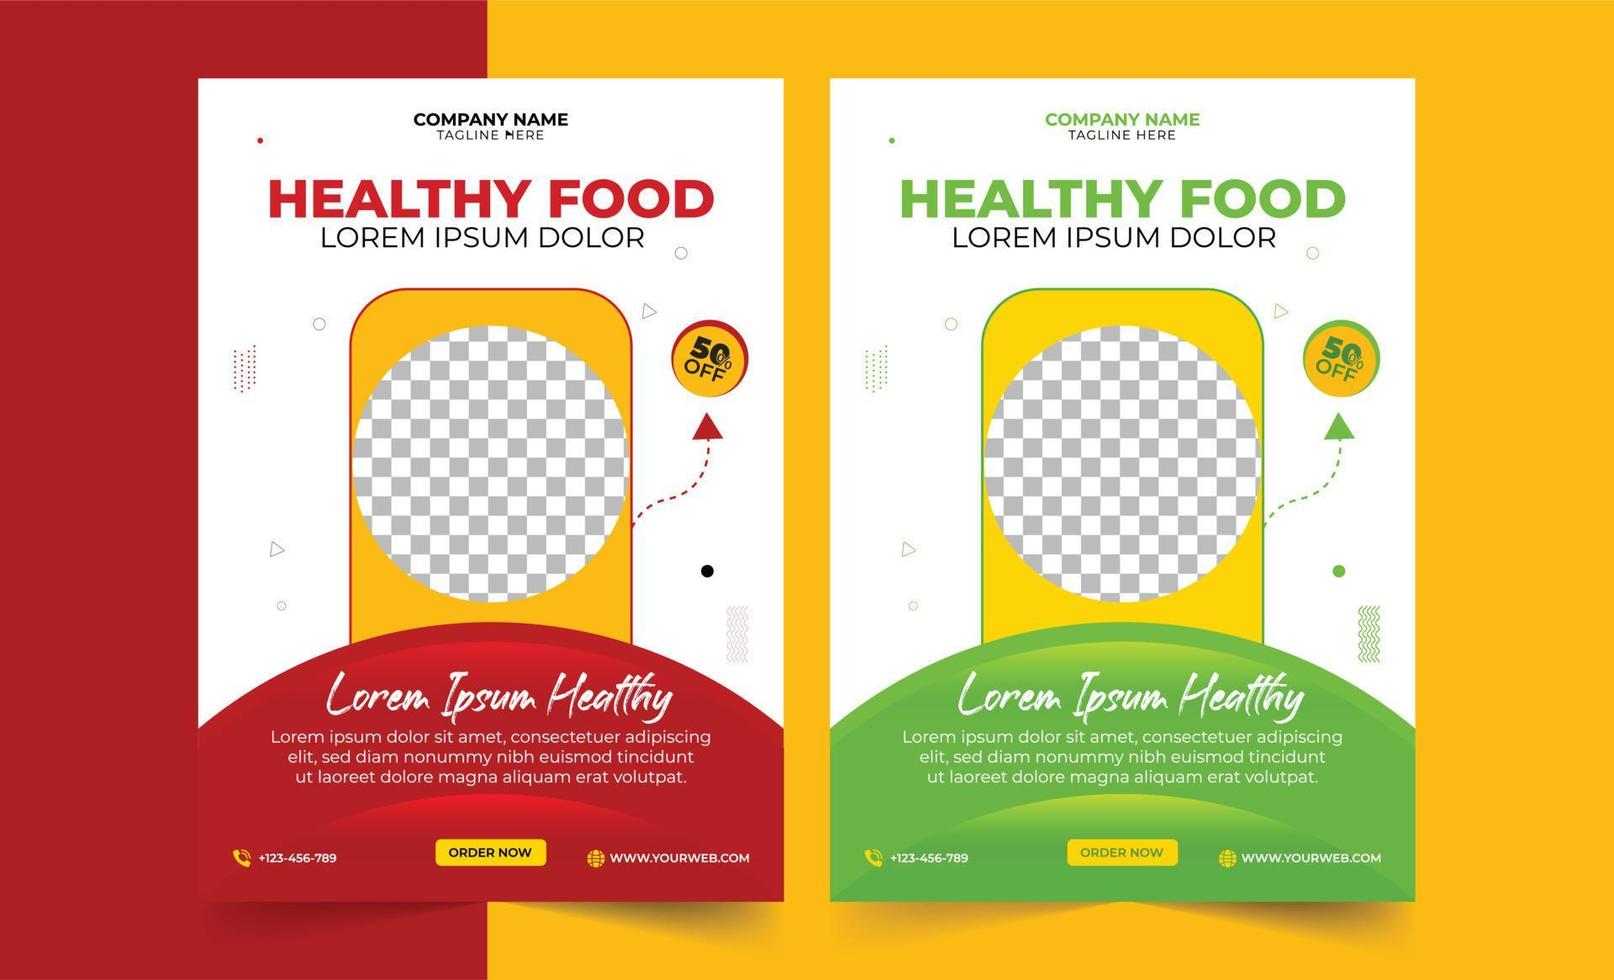 gezonde voeding restaurant poster, restaurant menu, brochure, flyer ontwerpsjablonen in a4-formaat. vectorillustraties voor marketingmateriaal voor eten en drinken, advertenties, presentatietempo van natuurlijke producten vector